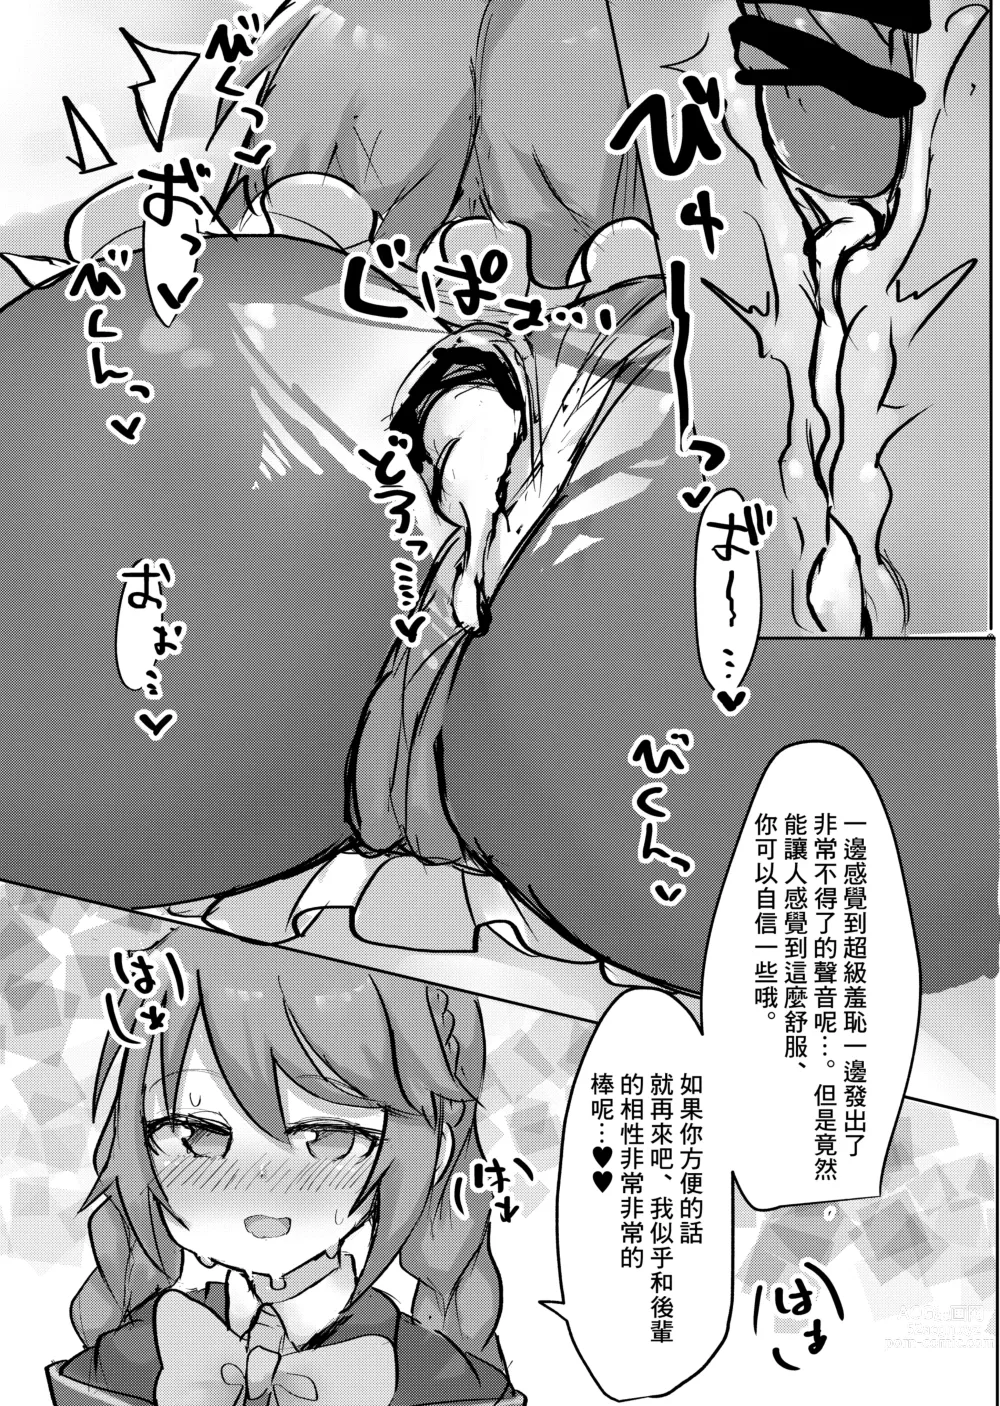 Page 17 of doujinshi Lolikko Daisuki Club ~Landosol Shibu~